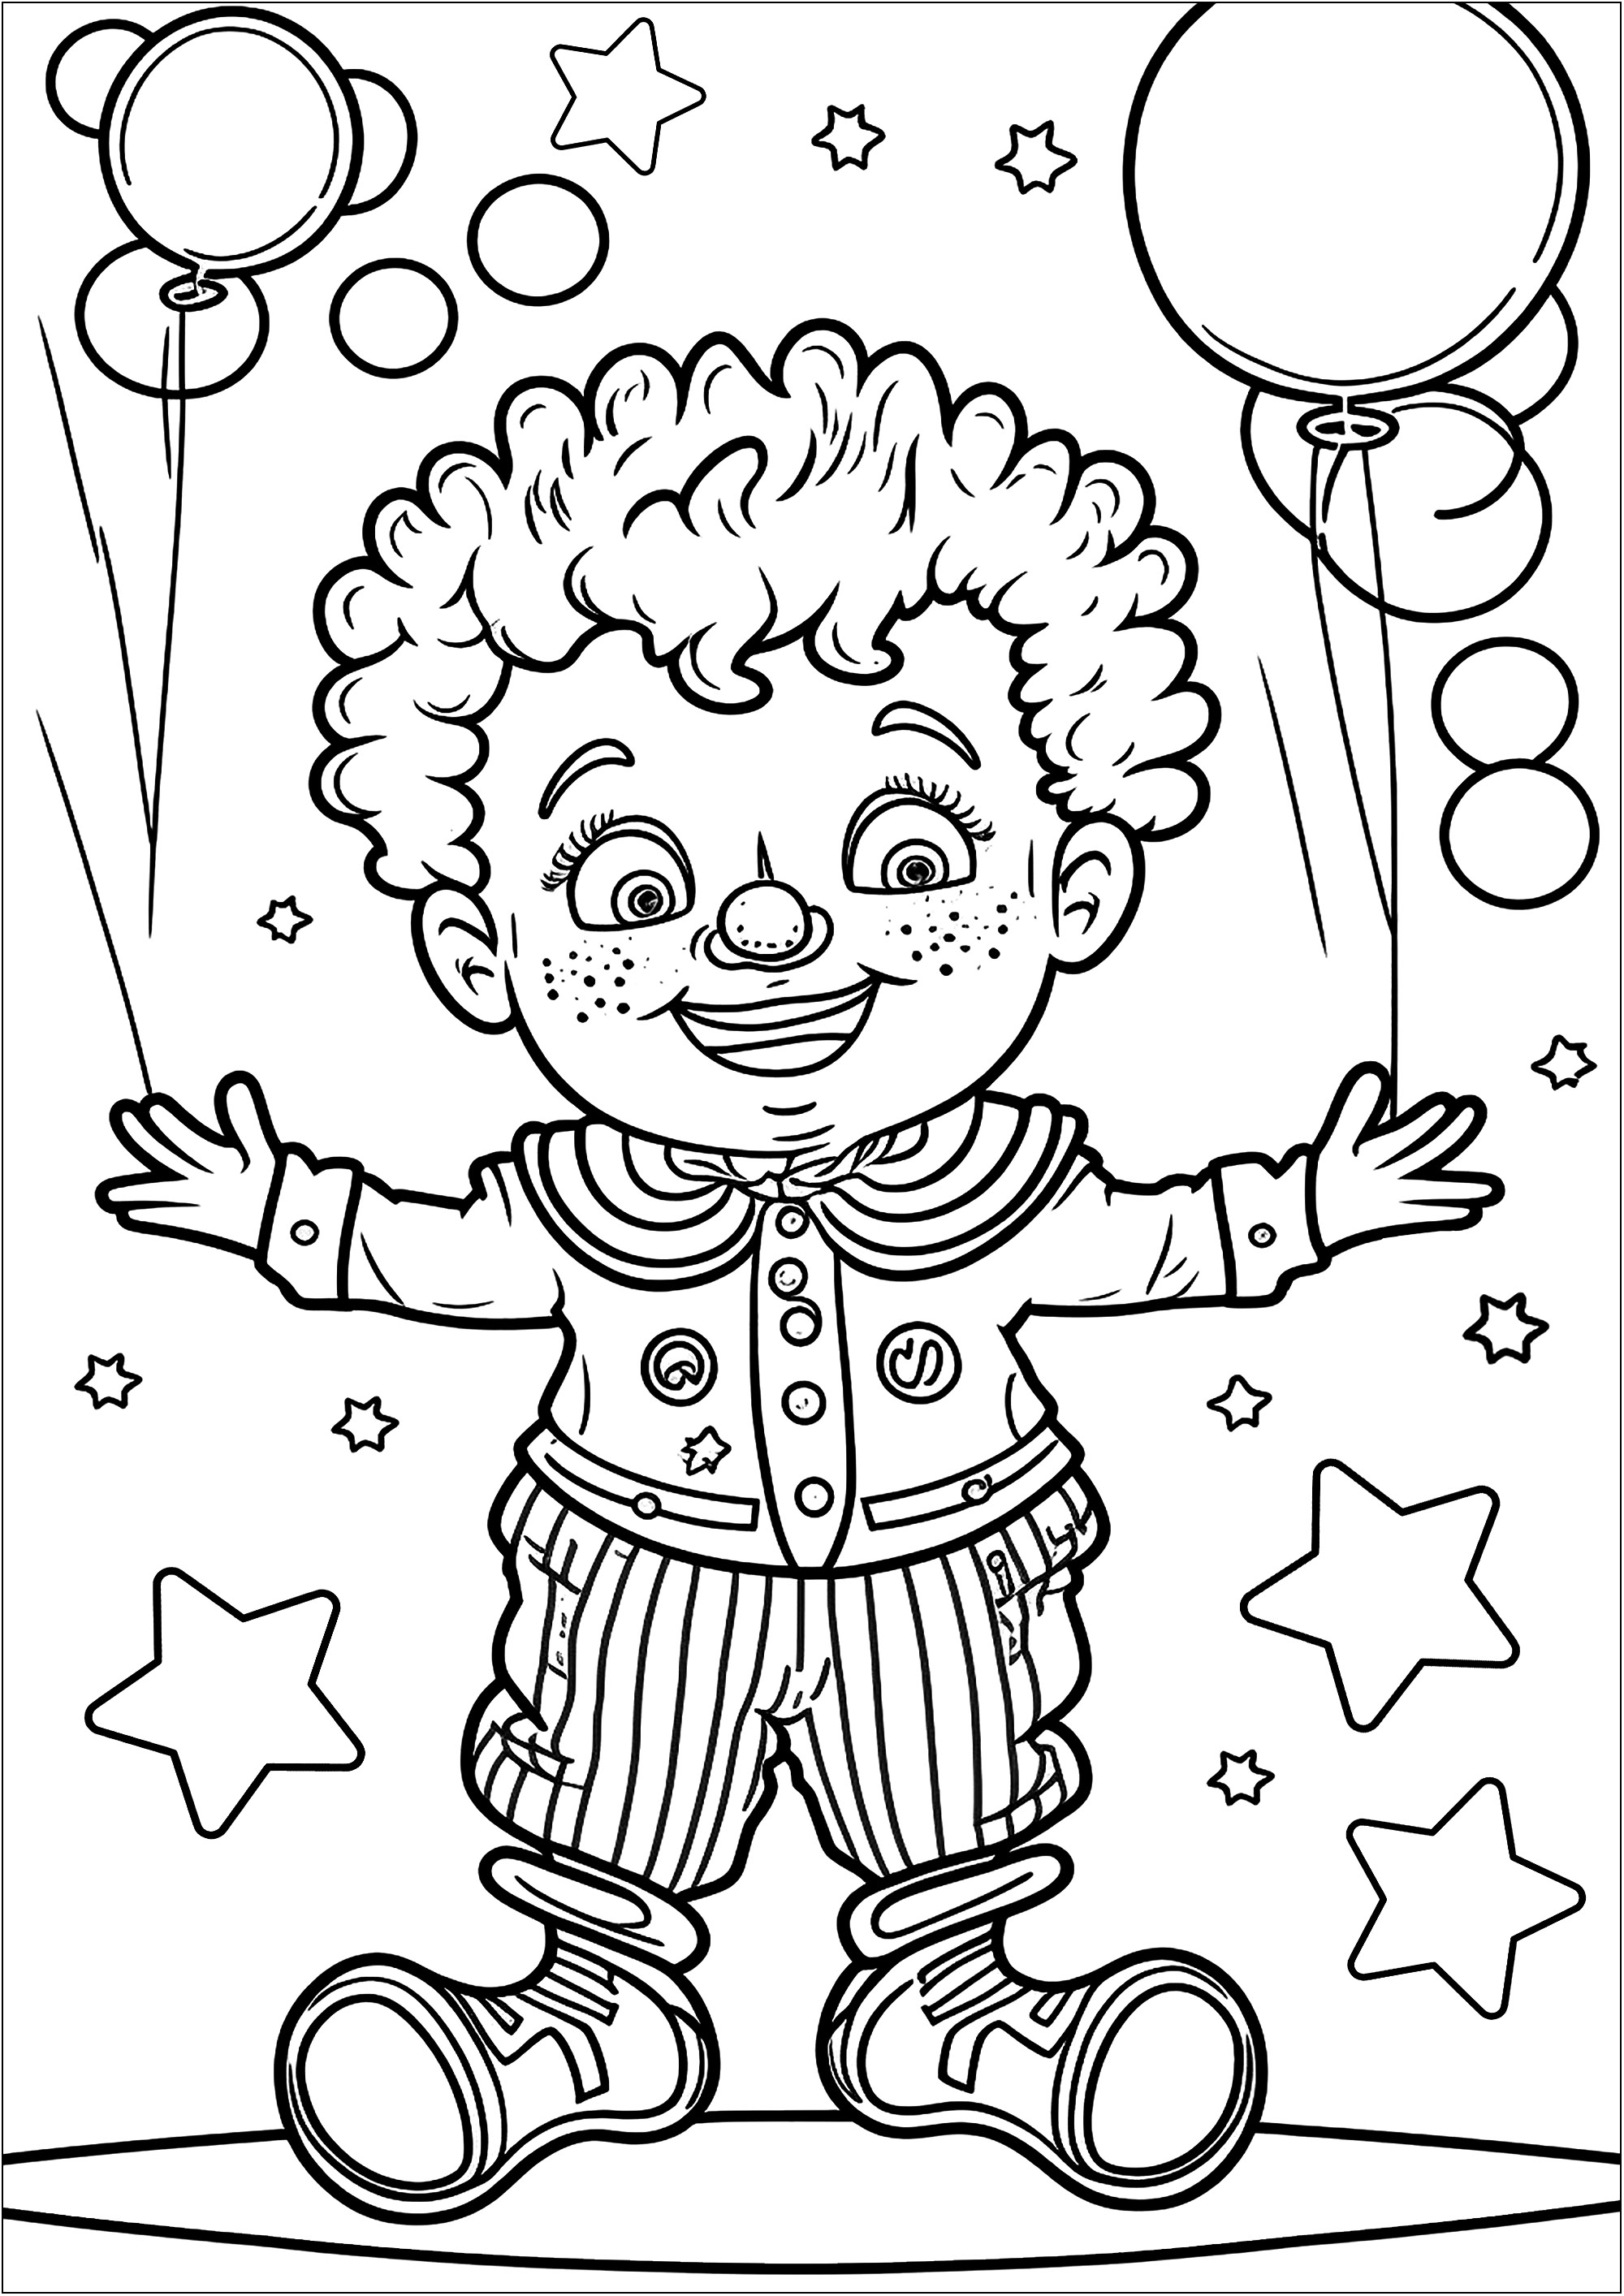 Jeune clown et ses ballons. Ce sympathique clown est représenté avec un grand sourire et une tenue pleine de détails à colorer. Il s'amuse avec plusieurs ballons.N'oubliez pas de colorier son nez de clown (en rouge bien sûr) pour ajouter une touche de gaieté à ce beau coloriage sur le thème du cirque.